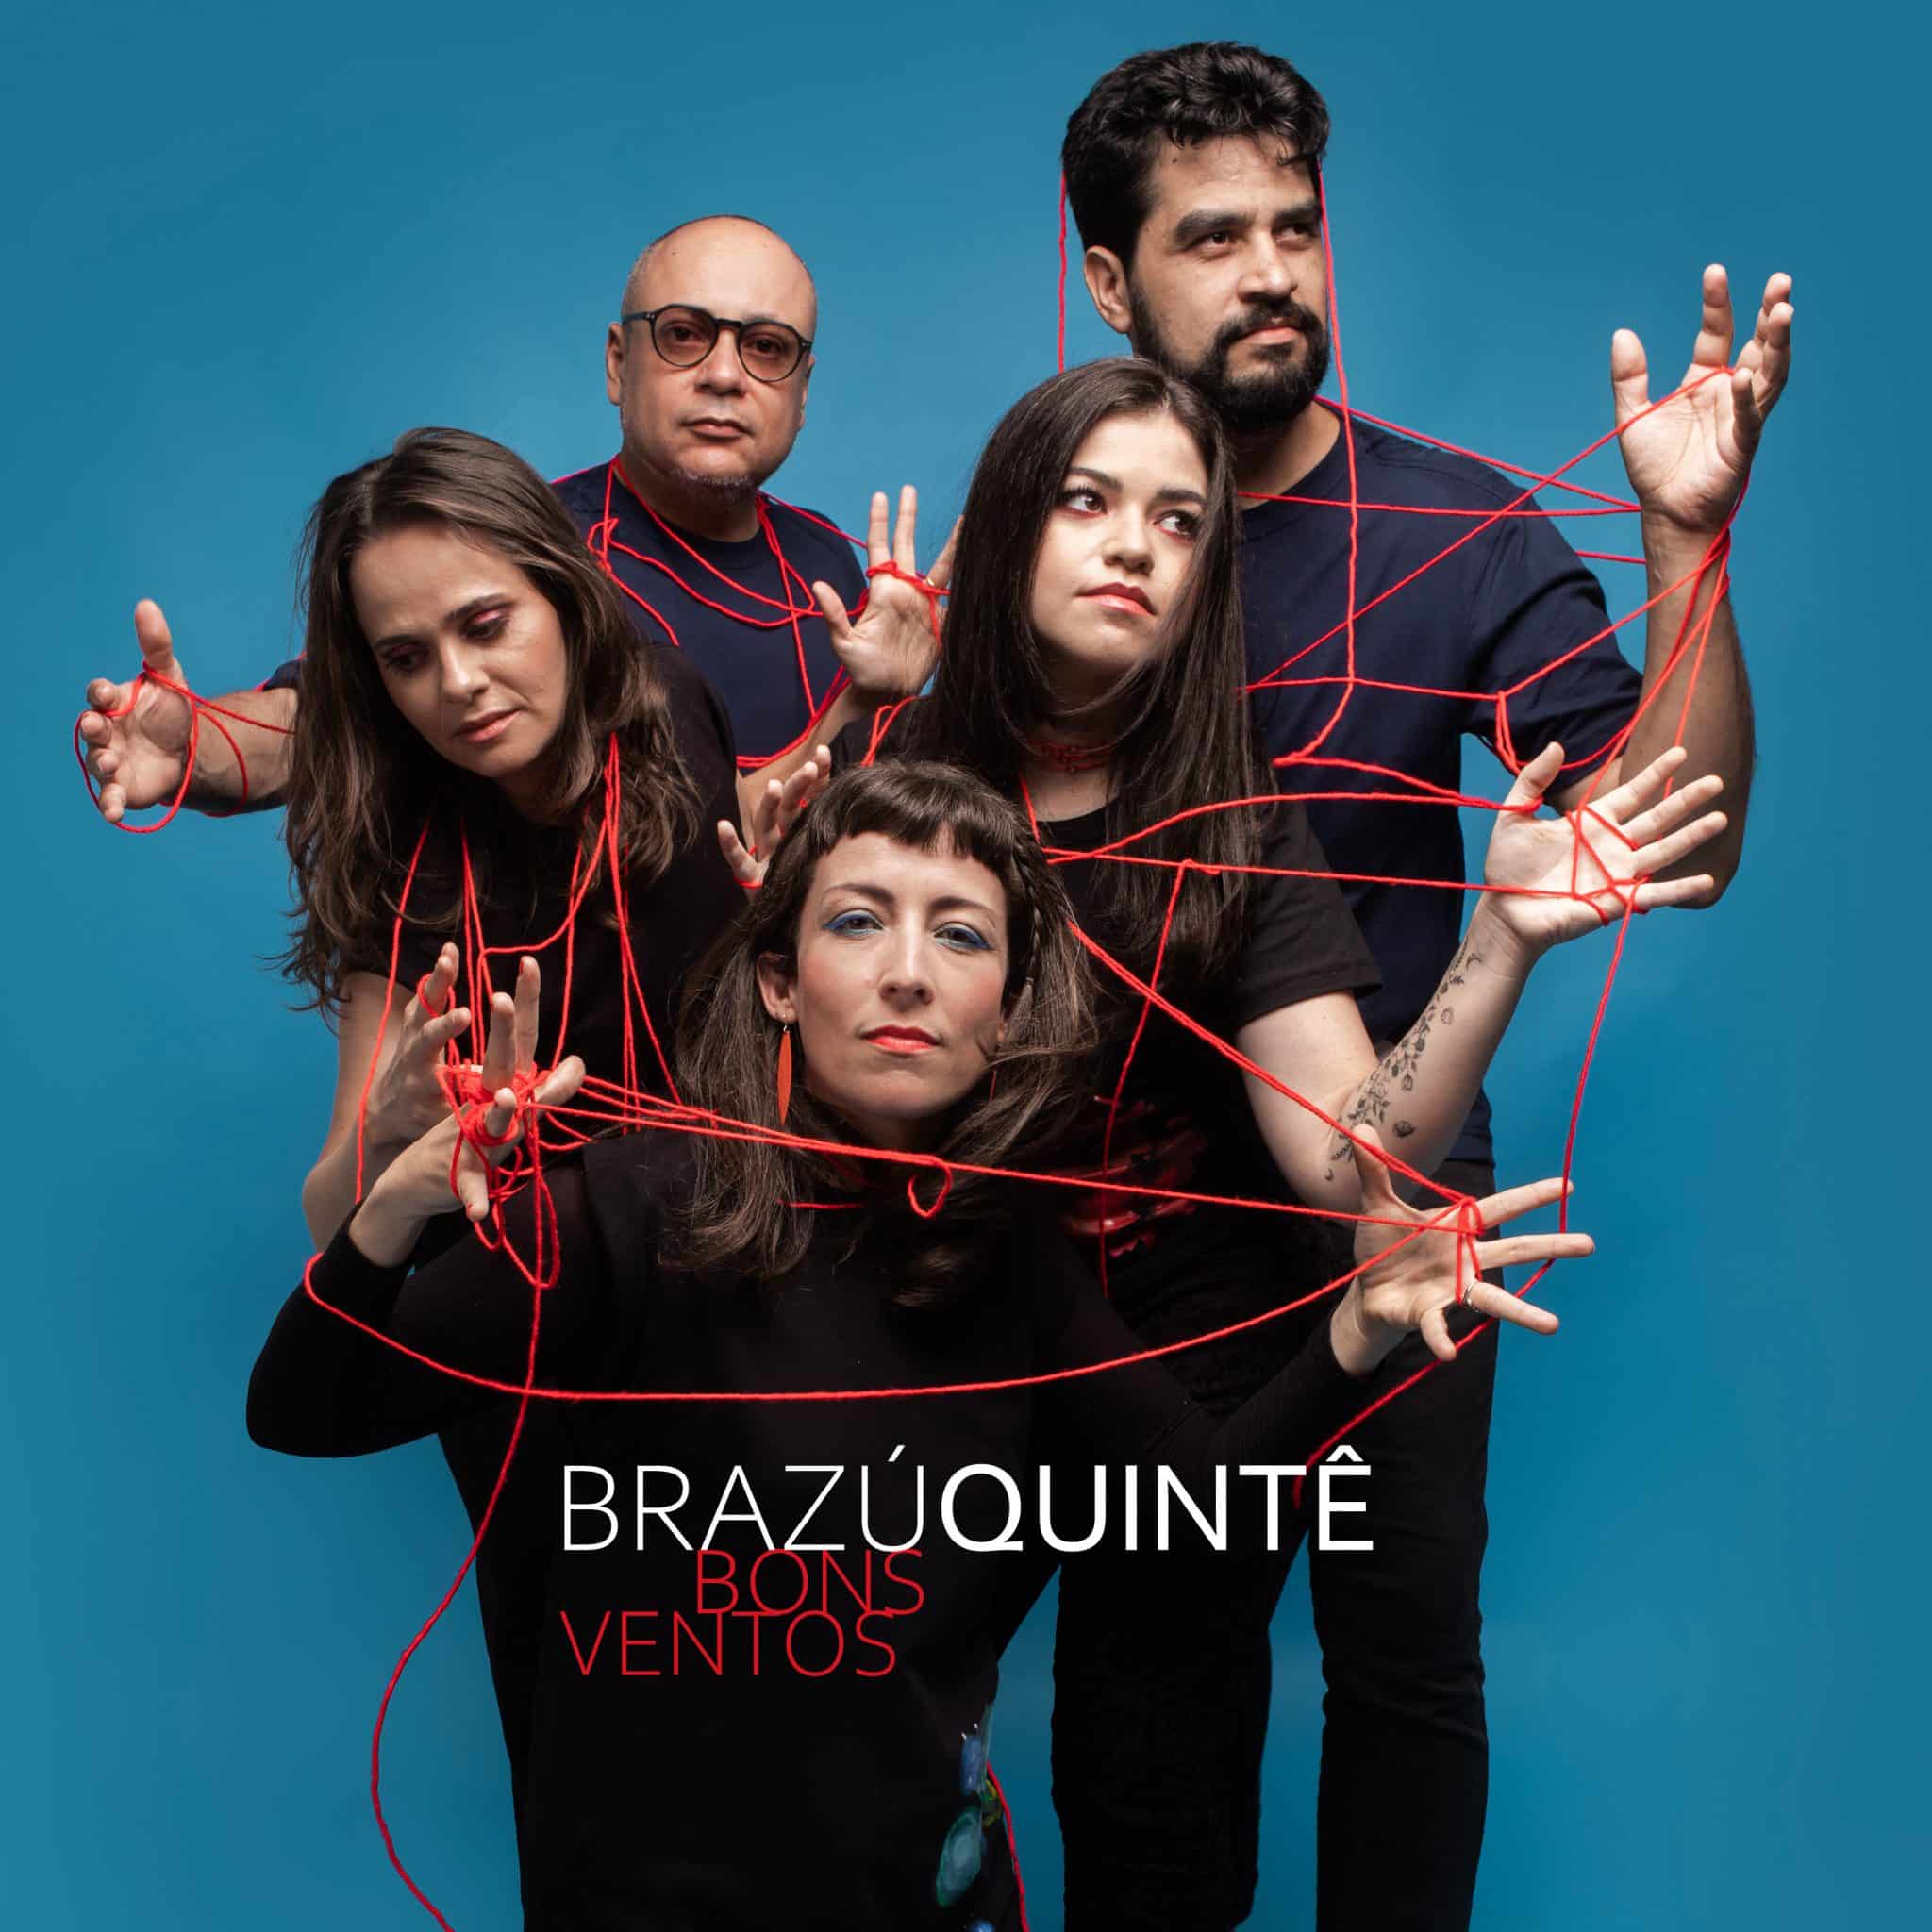 revistaprosaversoearte.com - Brazú Quintê lança 'Bons Ventos', segundo single do disco "Divinare"